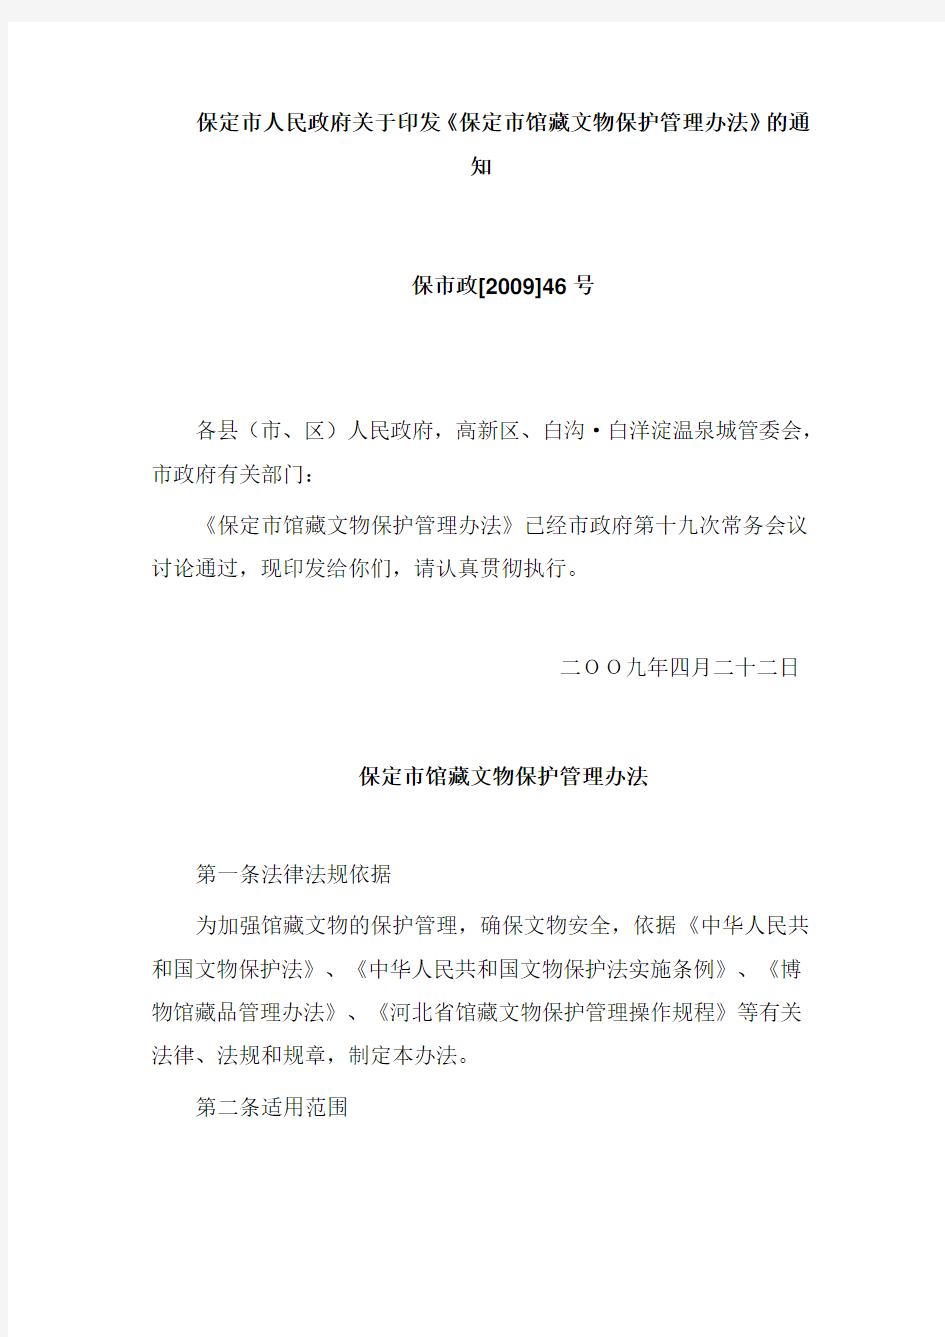 保定市馆藏文物保护管理办法(2009年发布)